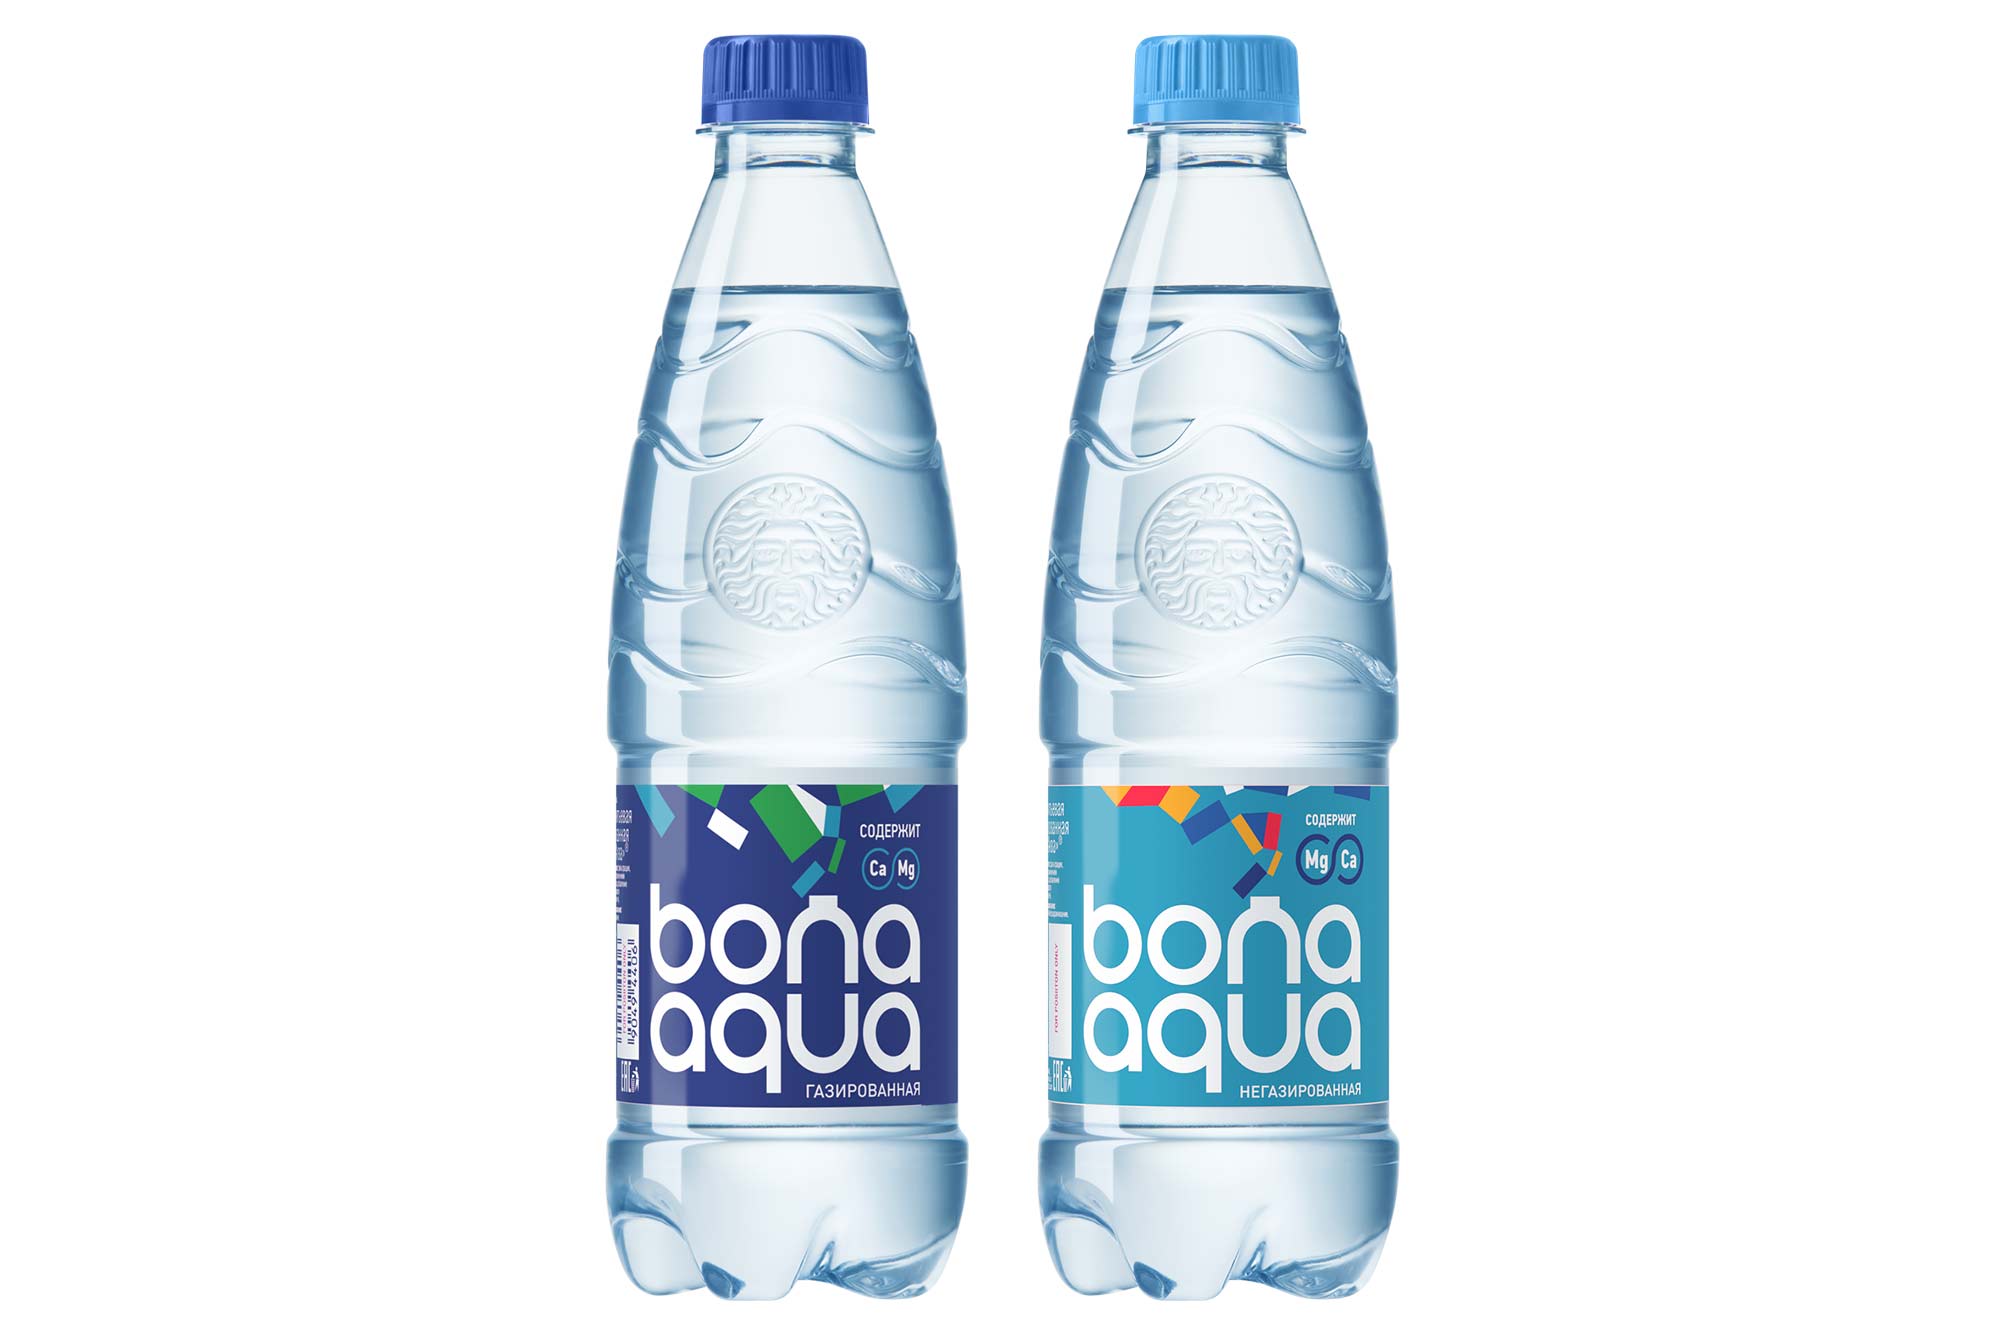 Bona Aqua 0.5 - 